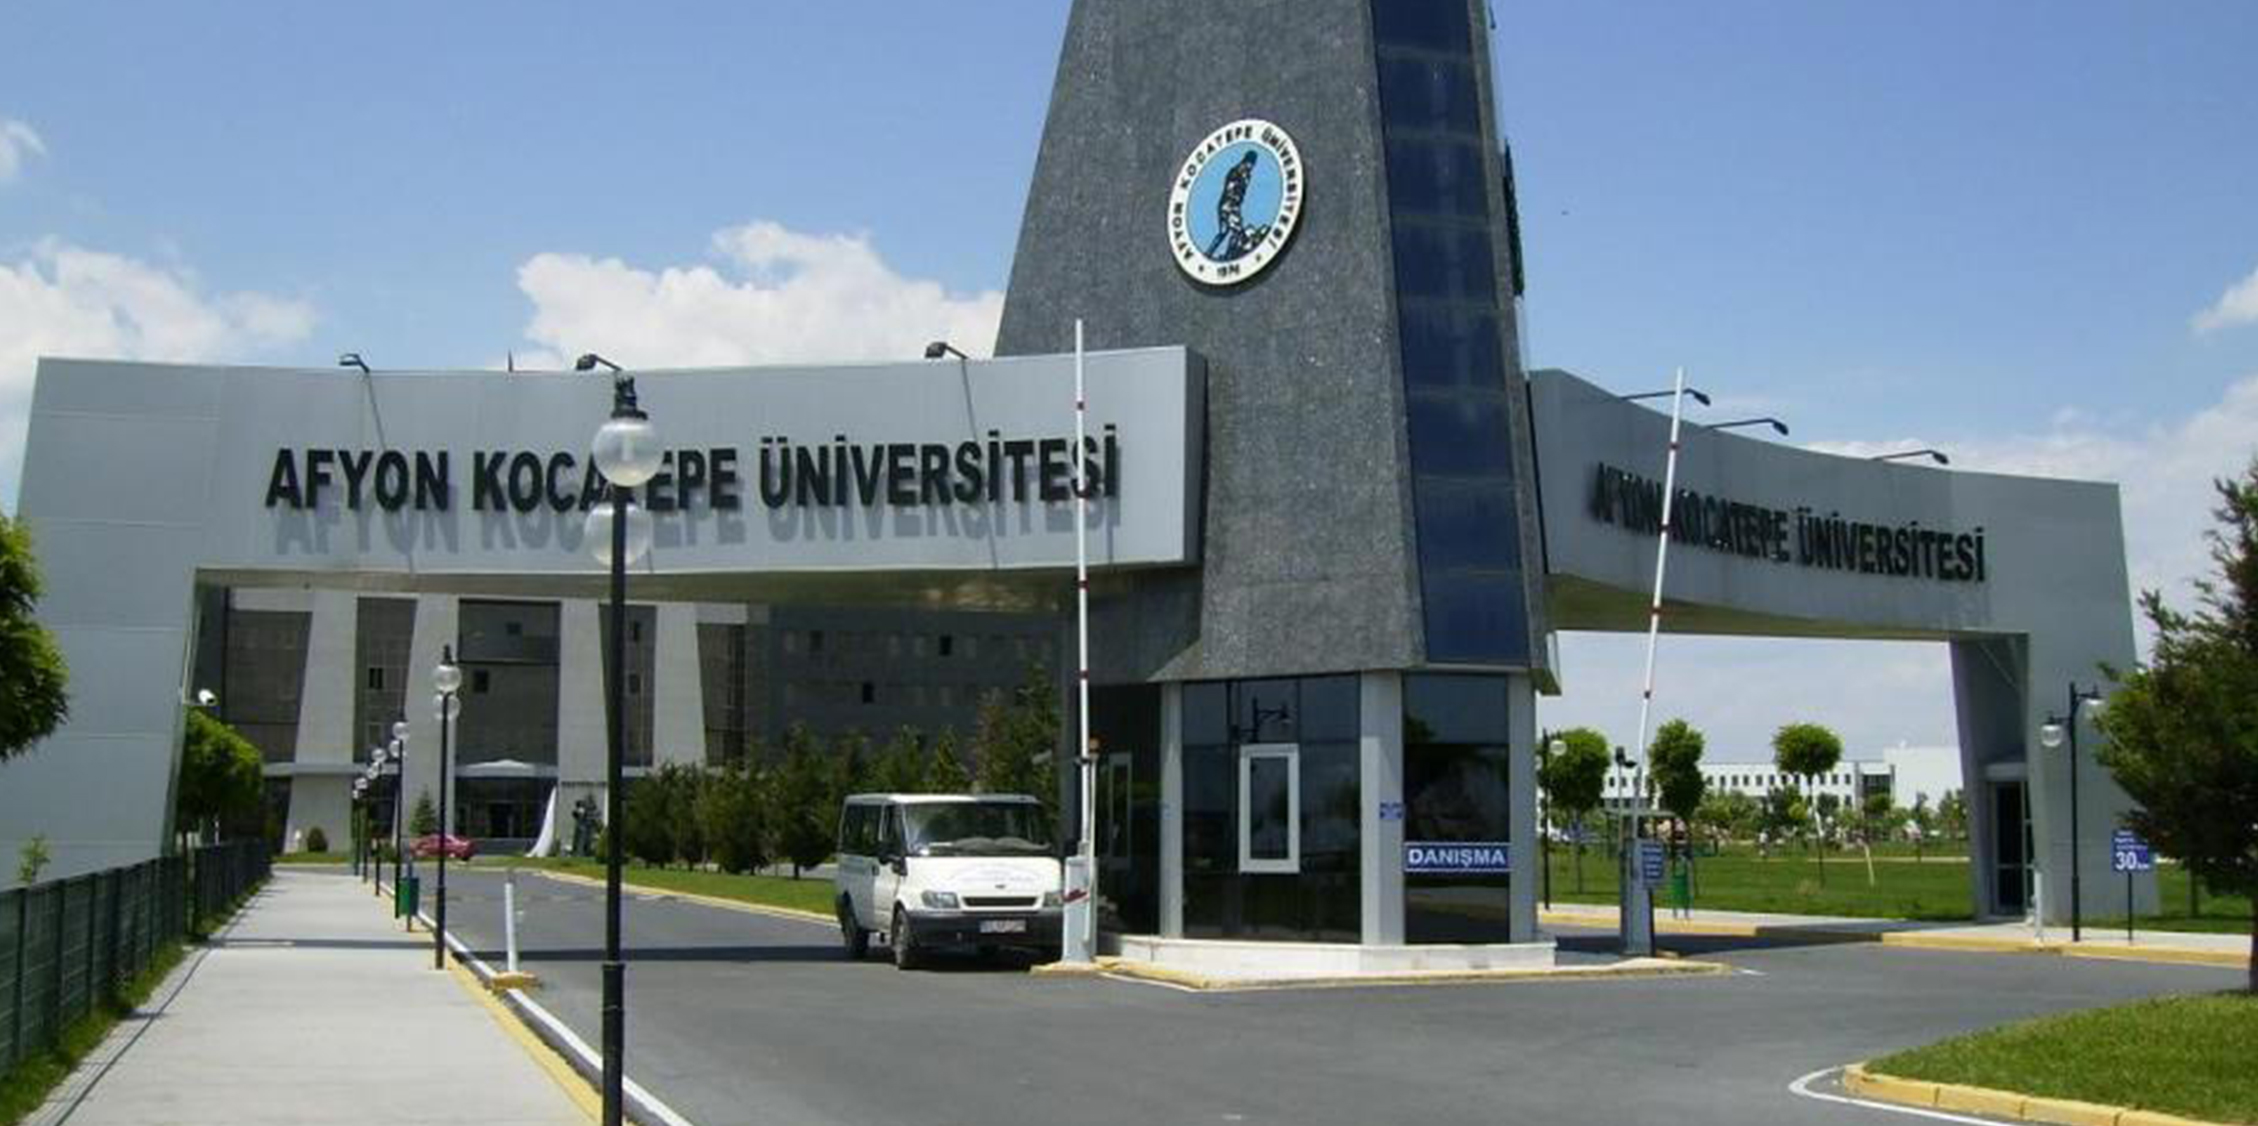 afyonkocatepe universitesi find and study 1 - Afyon Kocatepe Üniversitesi